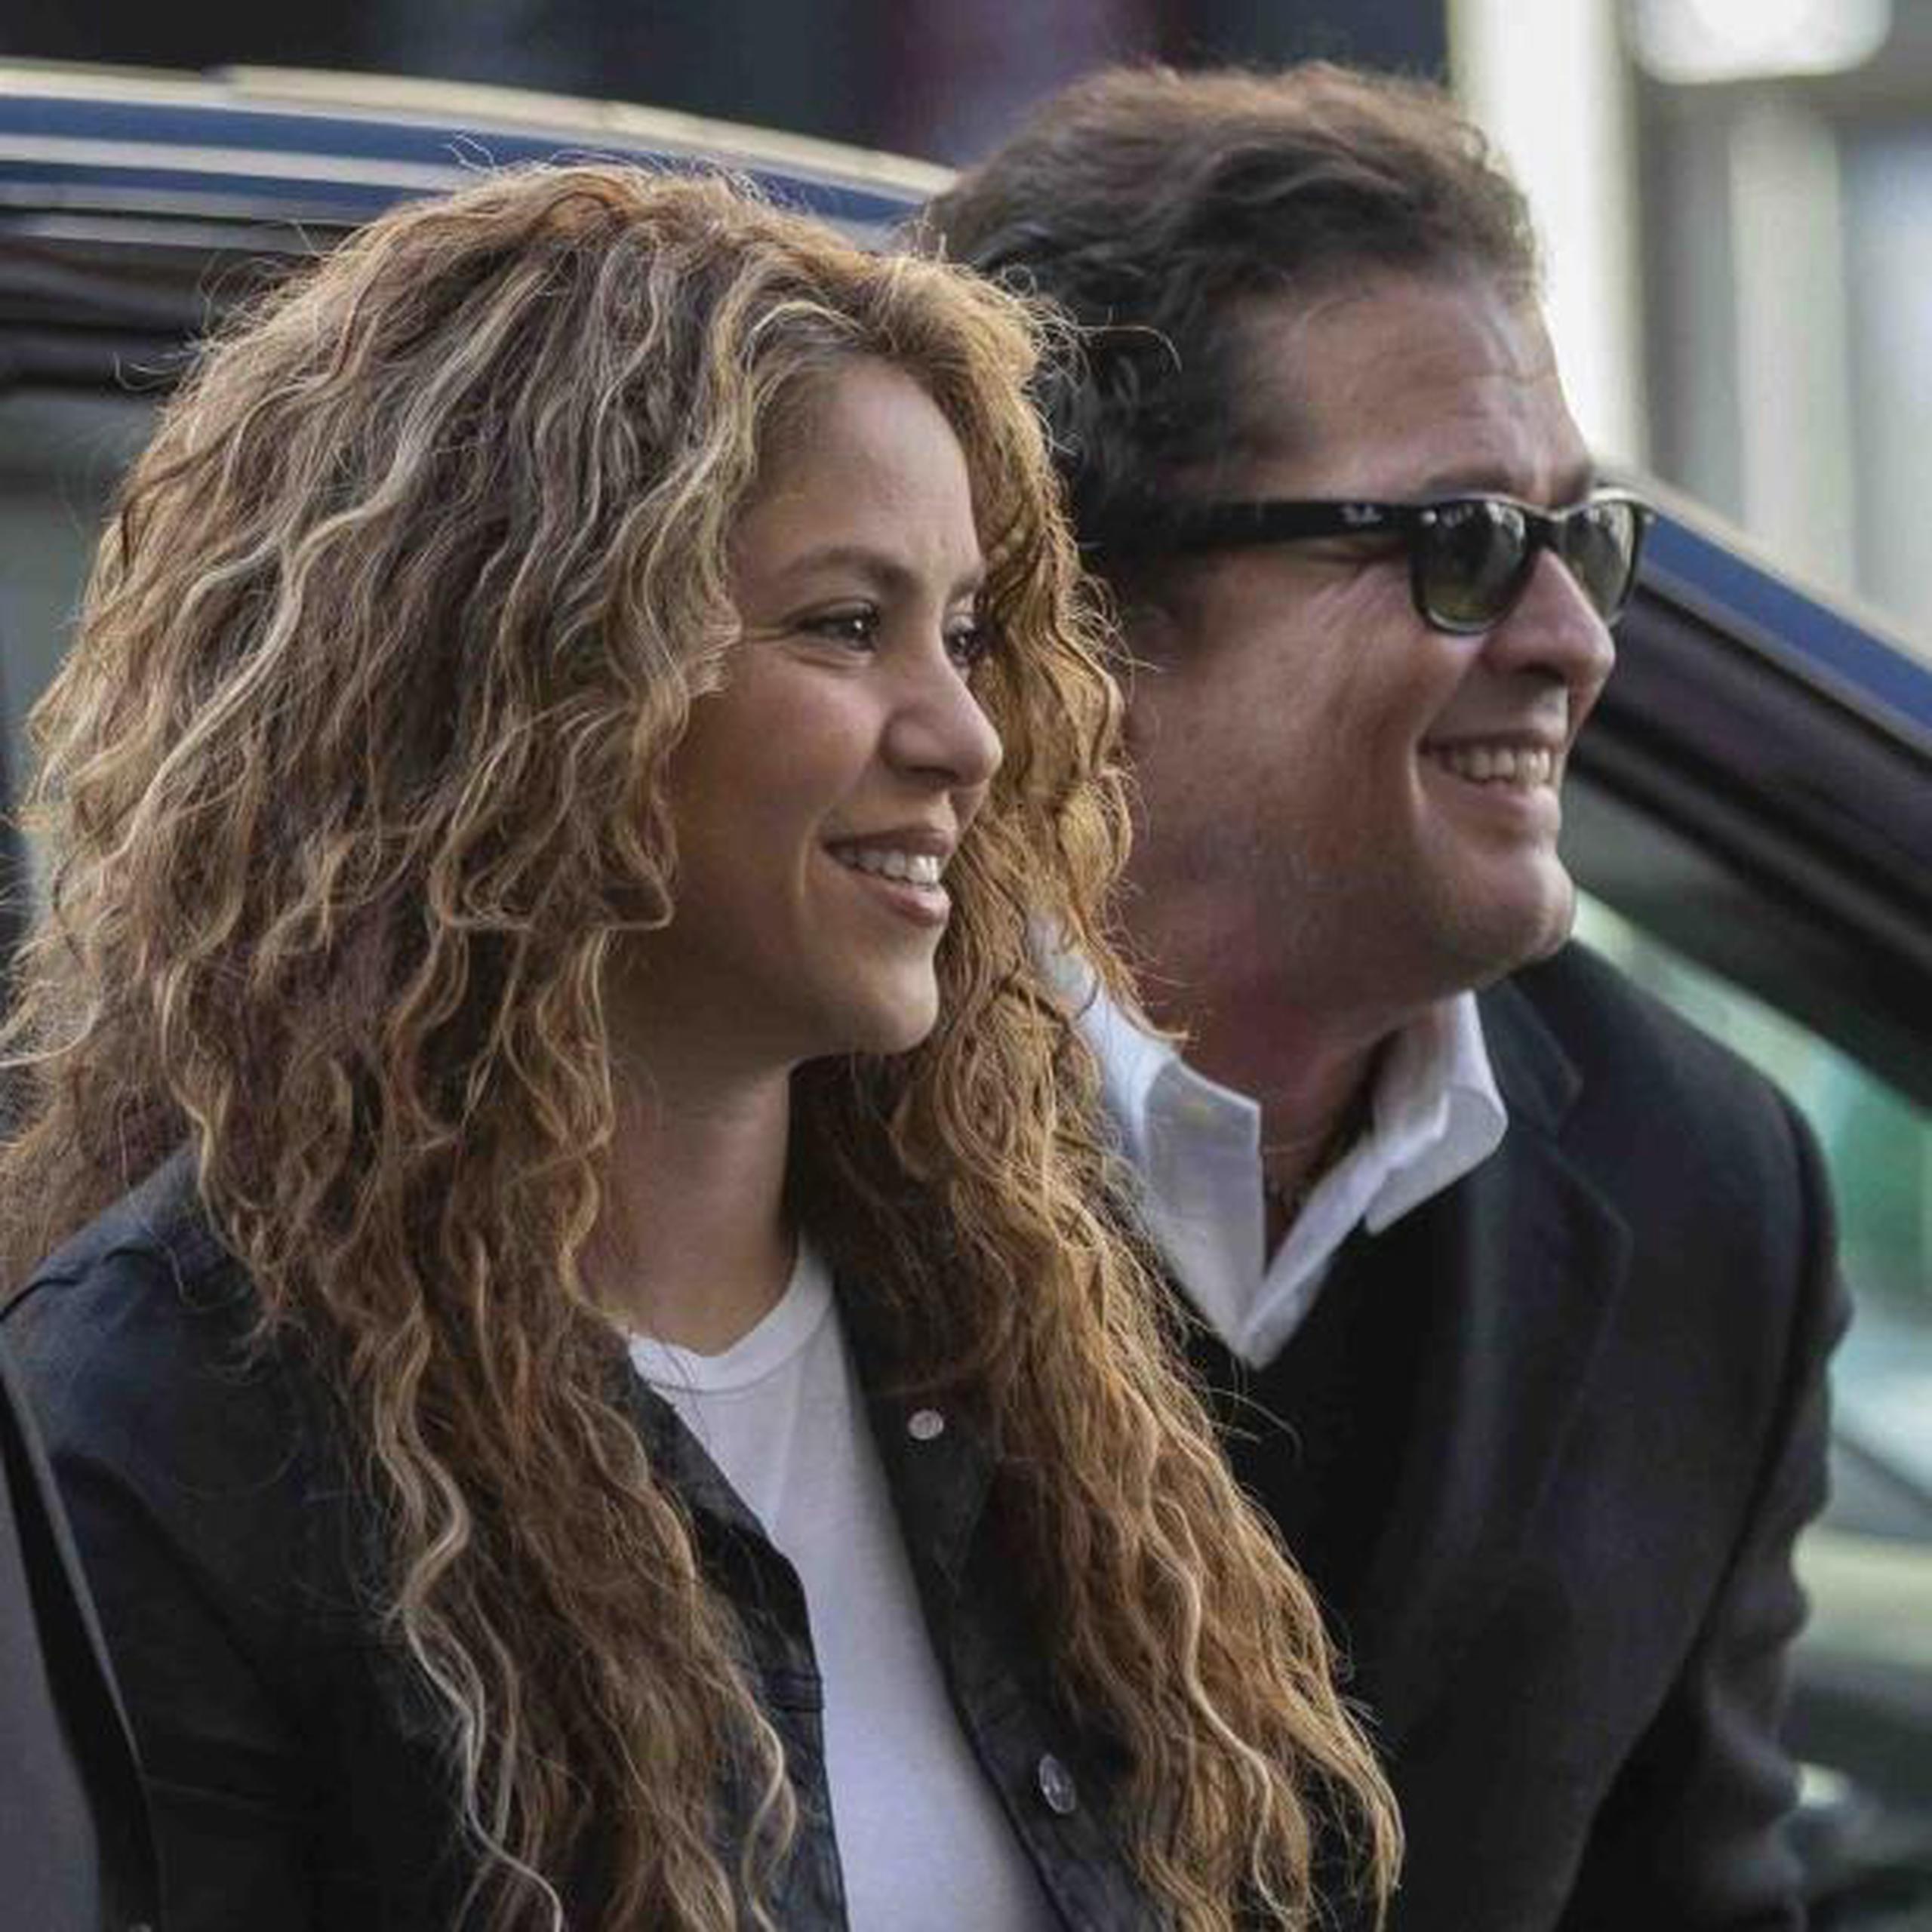 Shakira y Vives llegaron juntos y sonrientes al juzgado de lo mercantil en la céntrica Gran Vía de la capital española.  (AP)